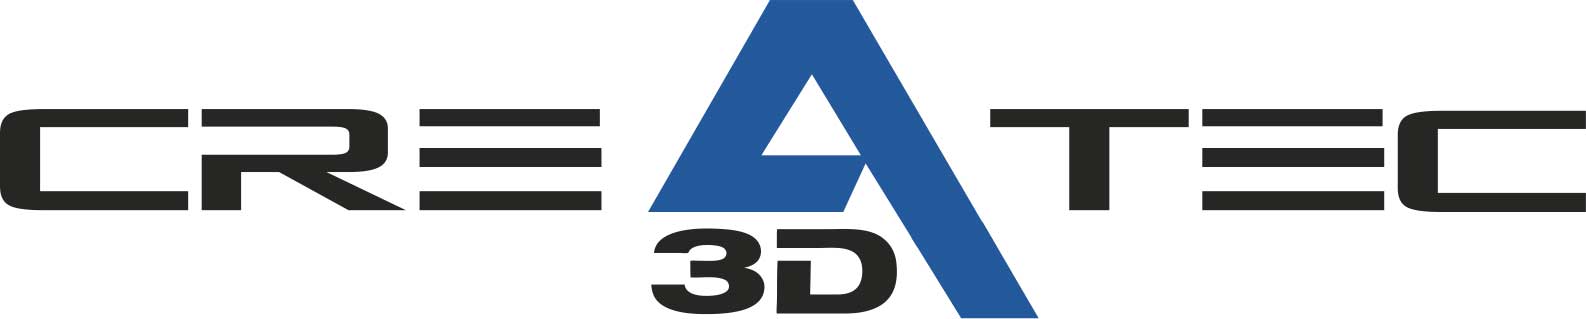 Createc 3D - Patrocinador Bronce